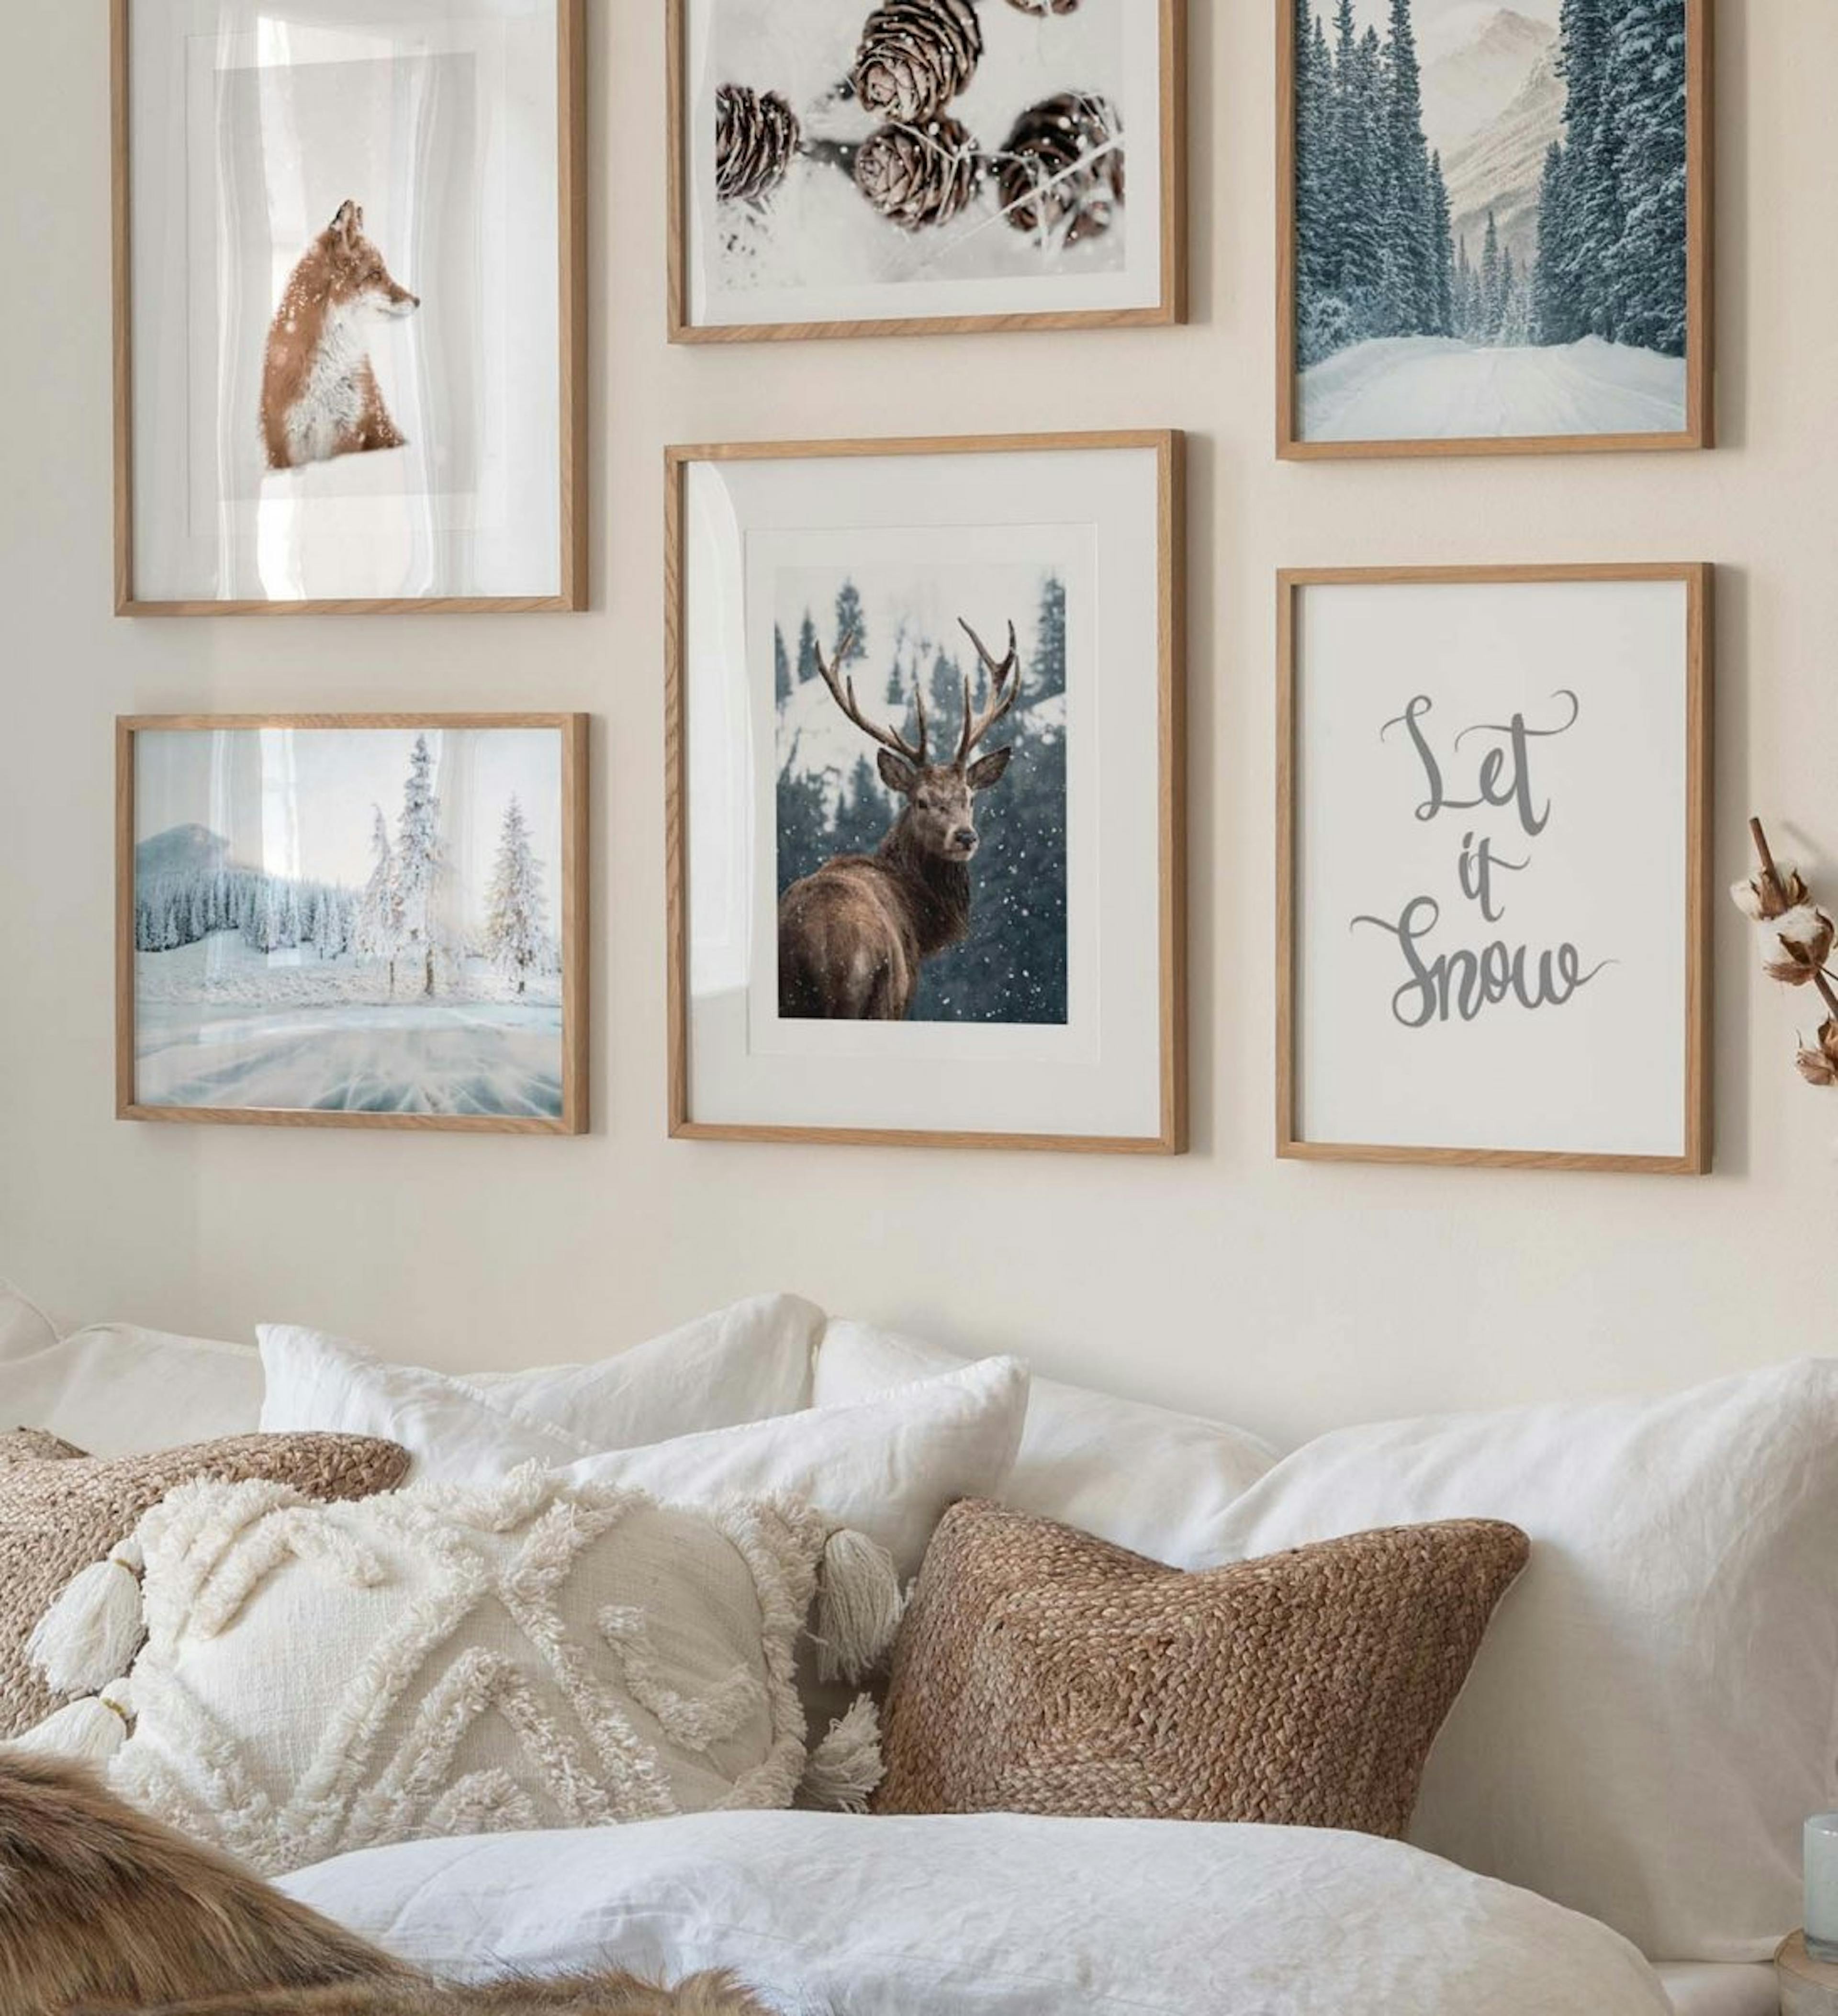 Galleria a parete con poster invernali di pigne, una volpe e un cervo abbinati a fotografie della natura invernale e stampe di c